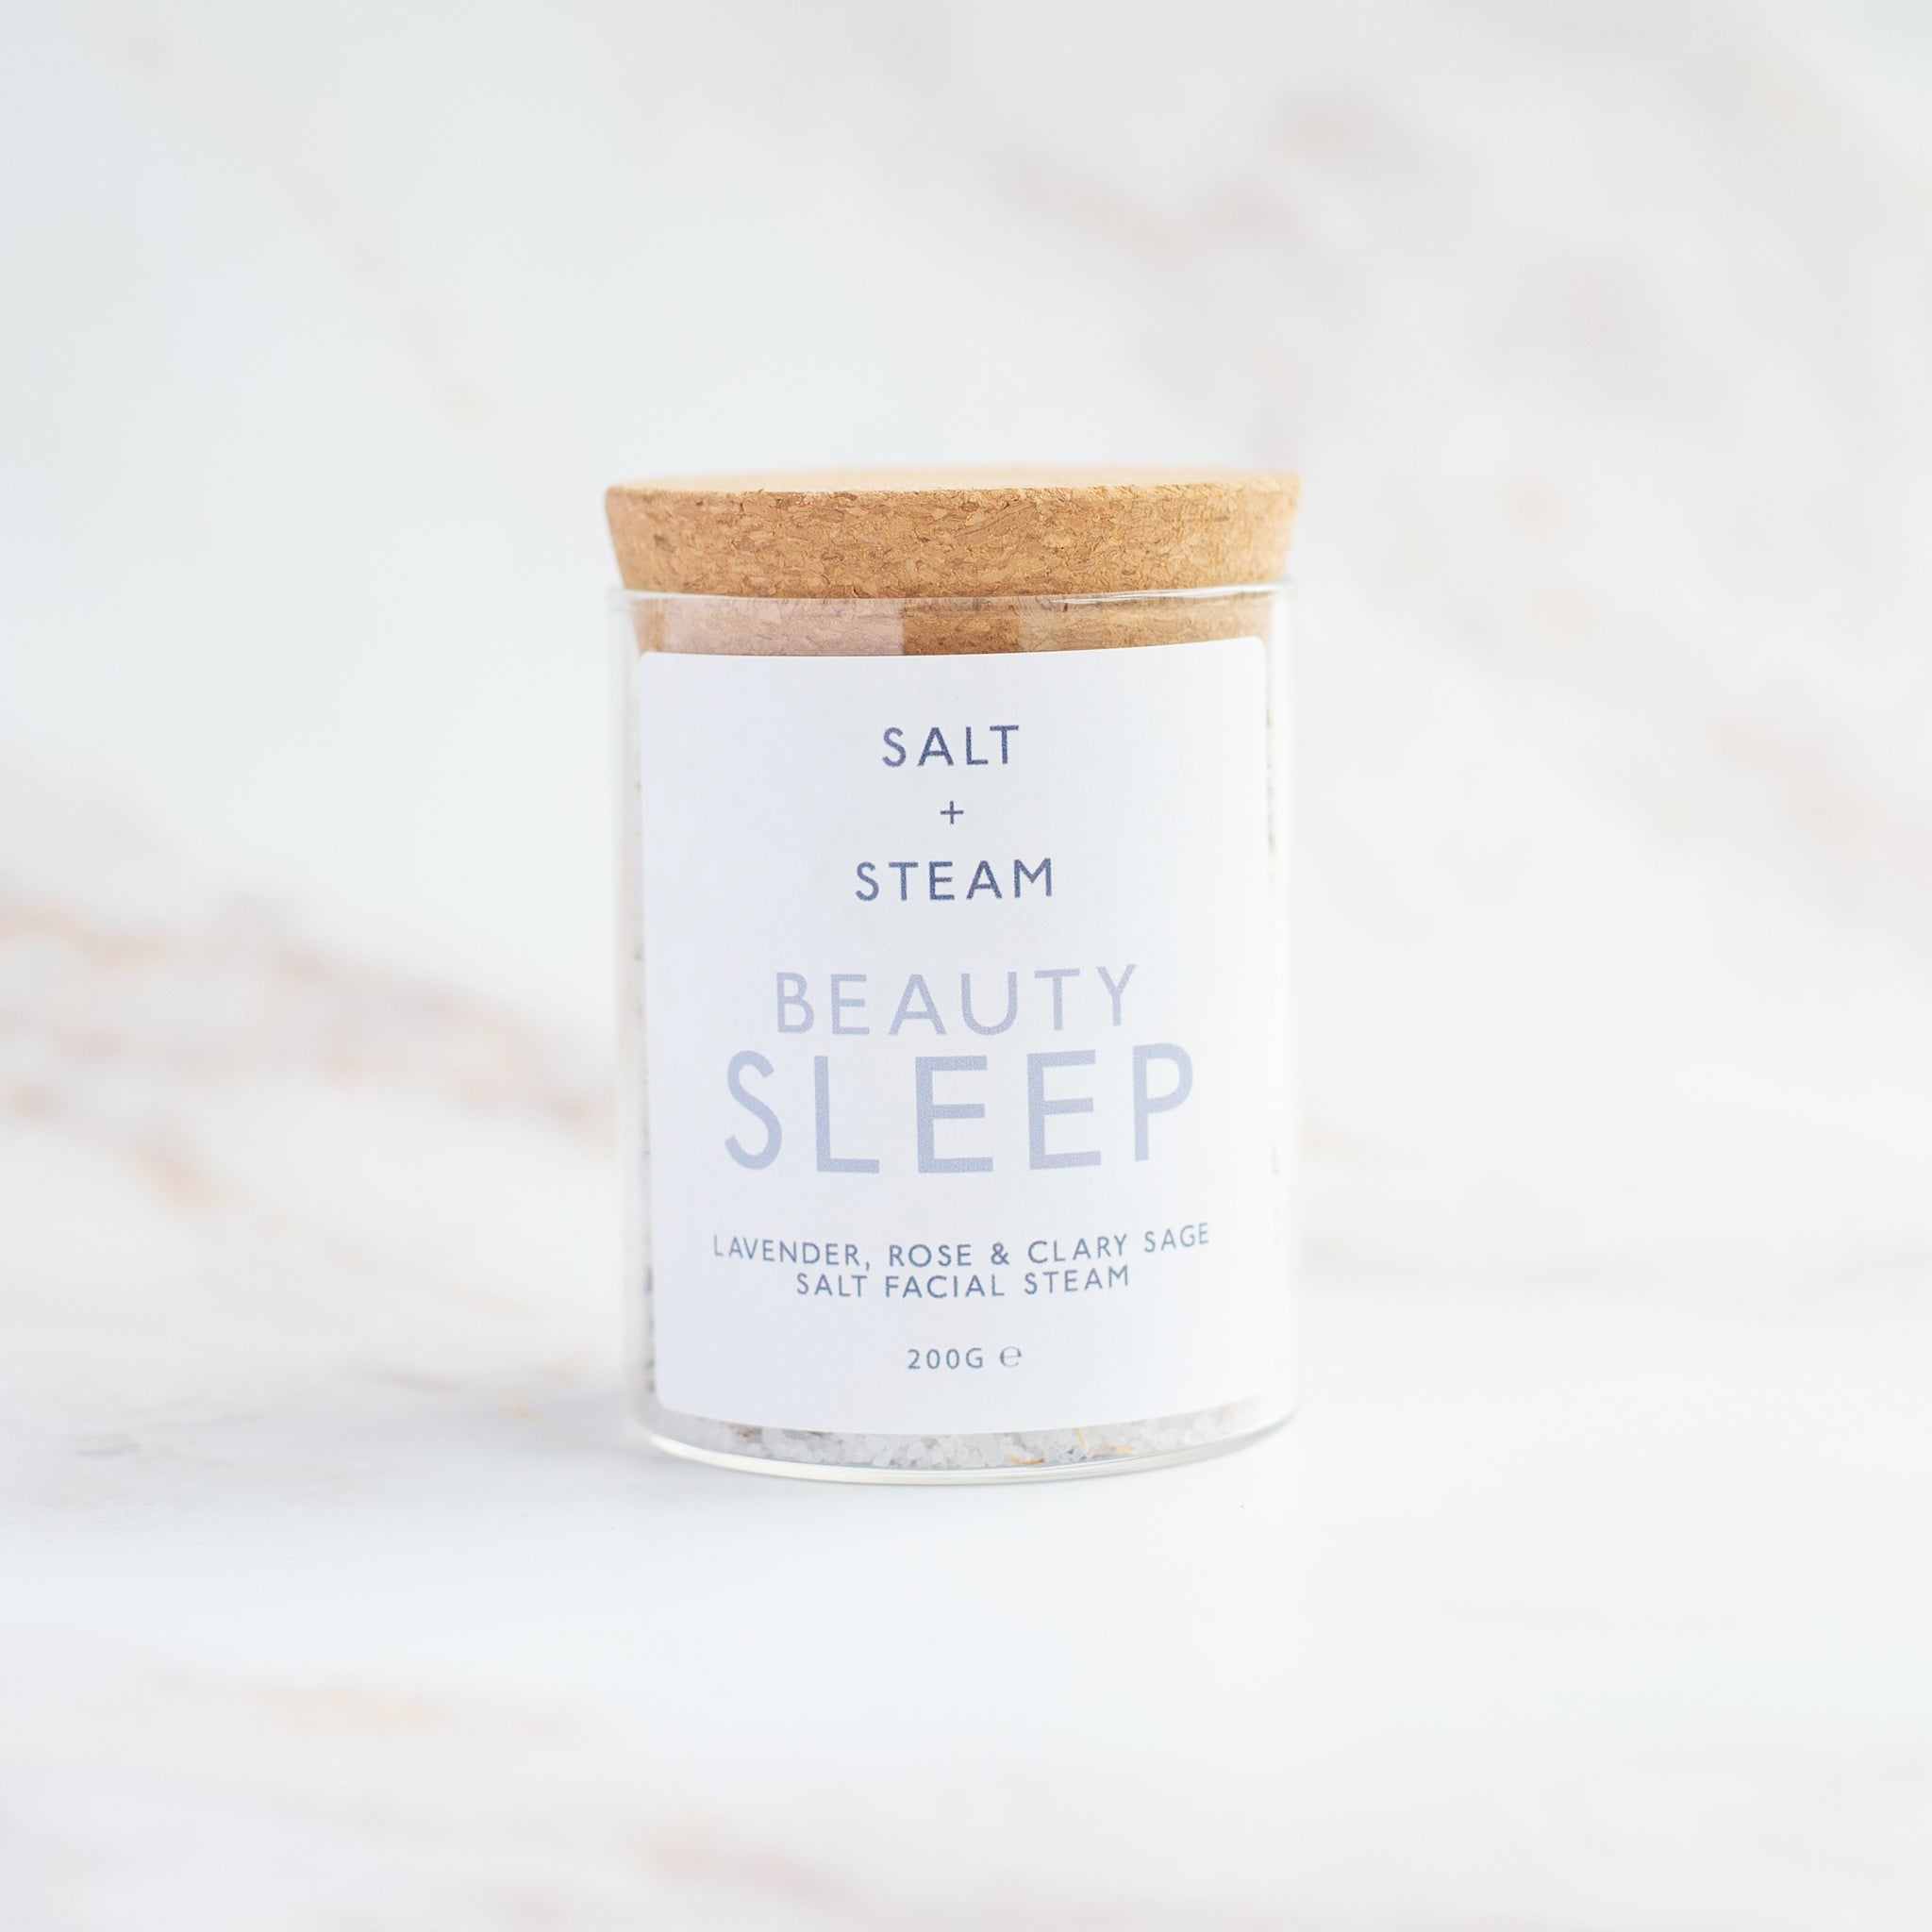 'Beauty Sleep' Facial Steam